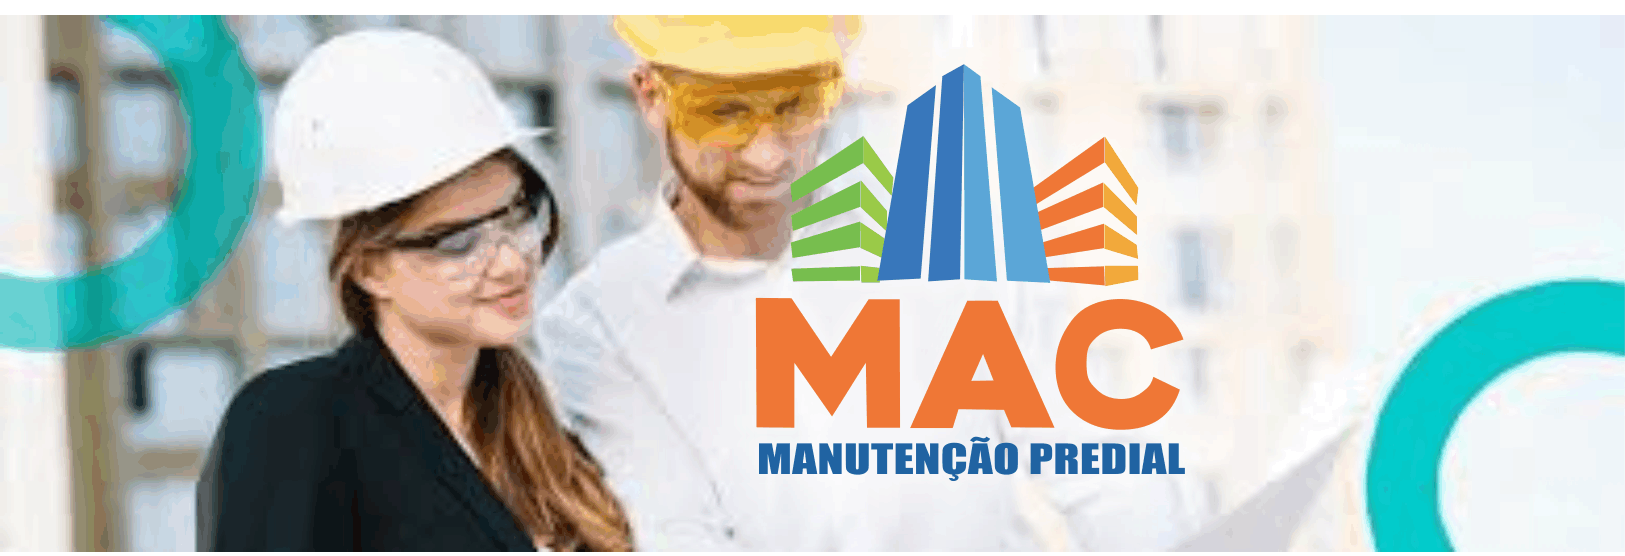  MAC Manutenção Predial      Fones: (41)99281-4985 